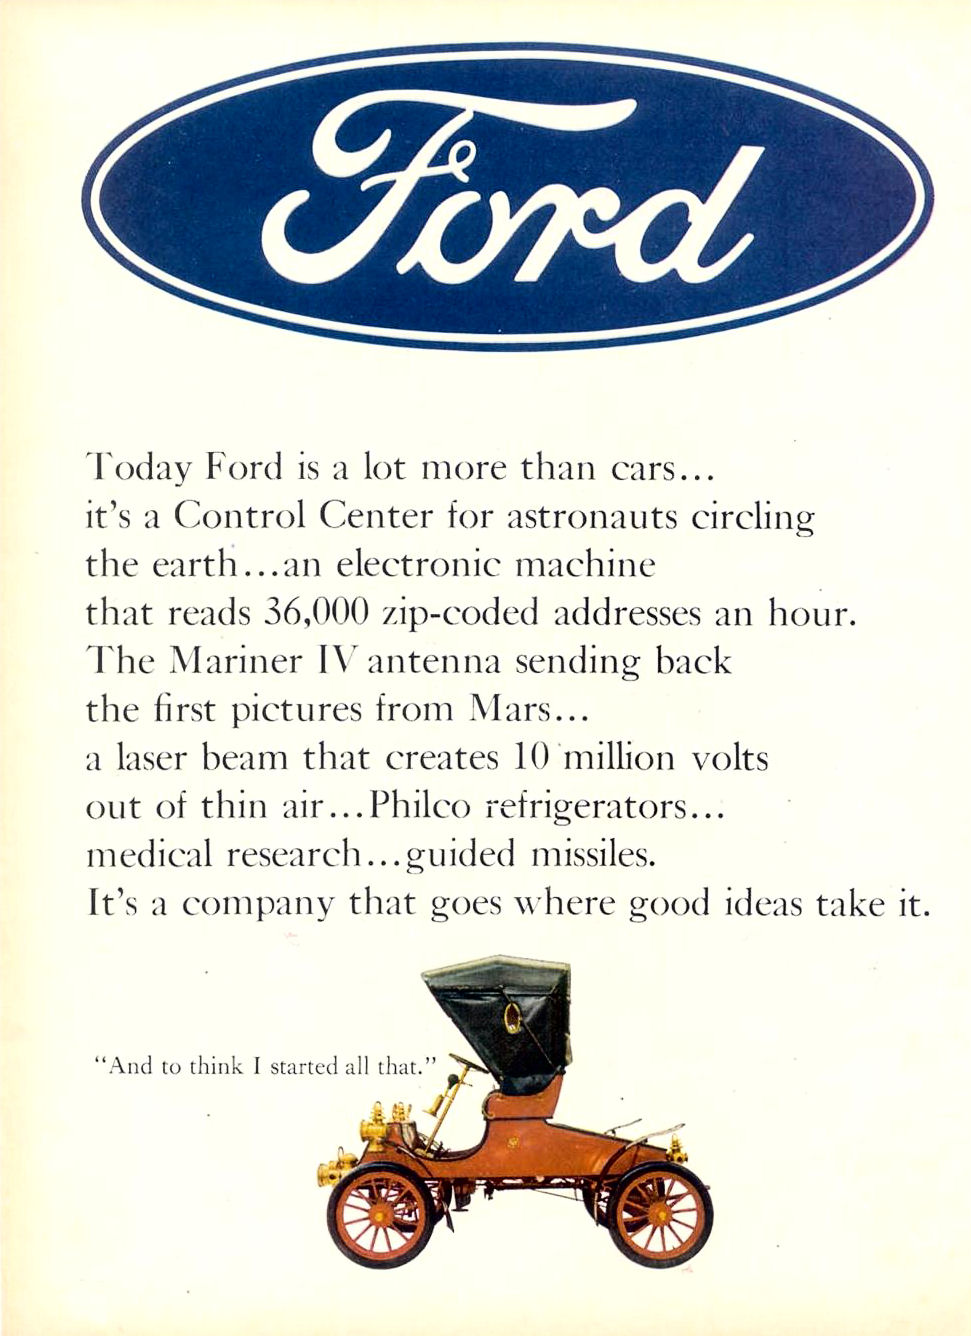 1966 Ford Motor Company 8